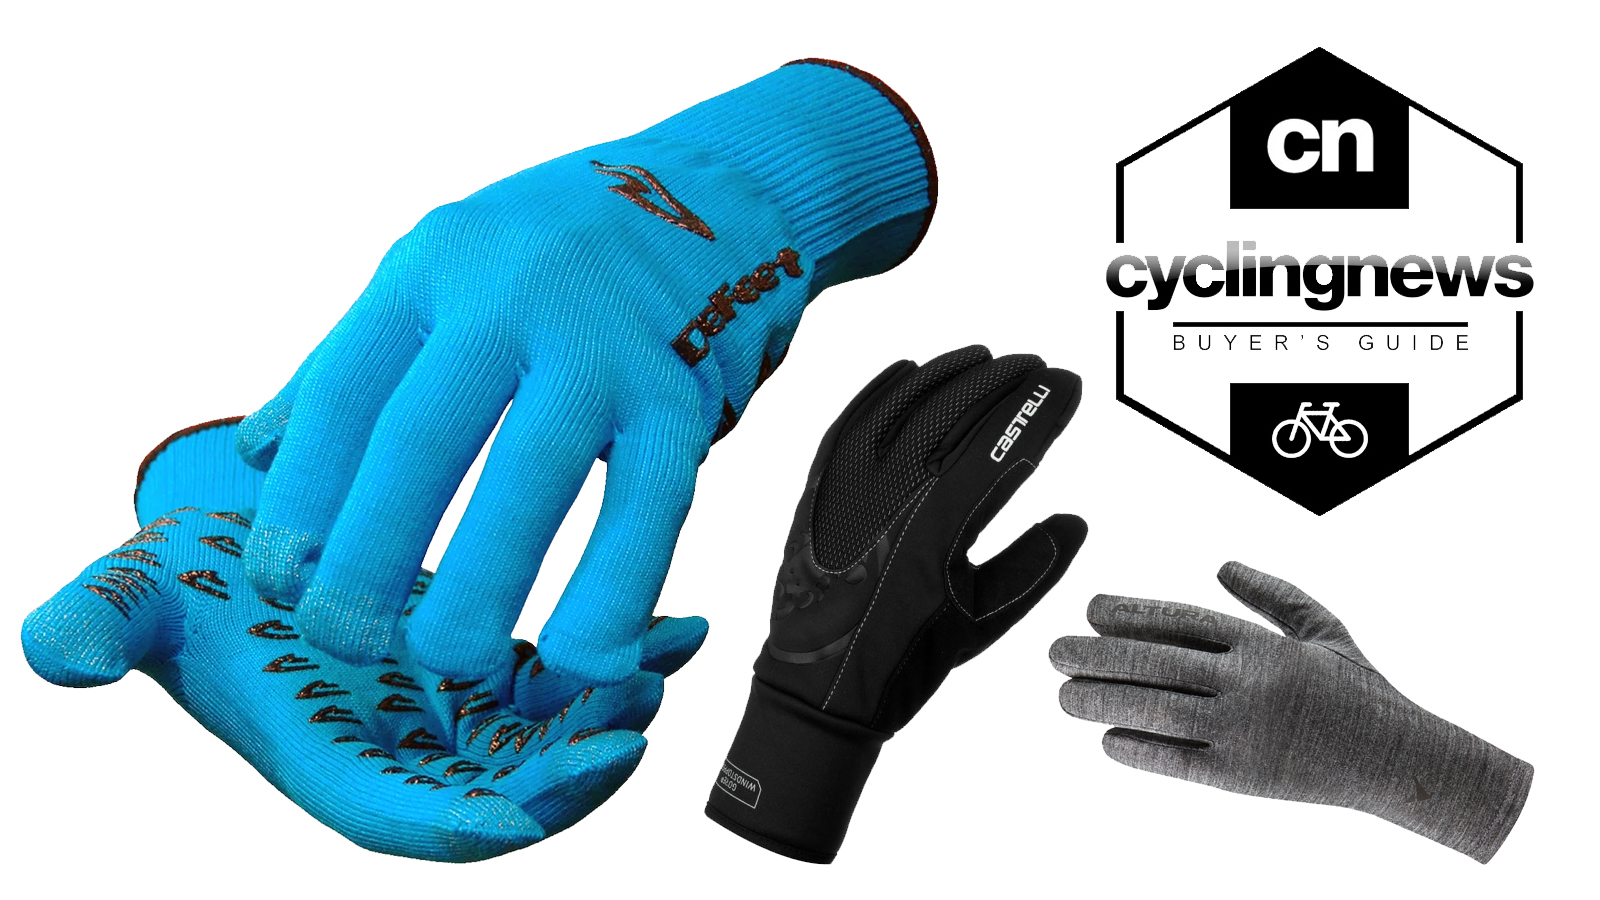 dhb extreme winter gloves